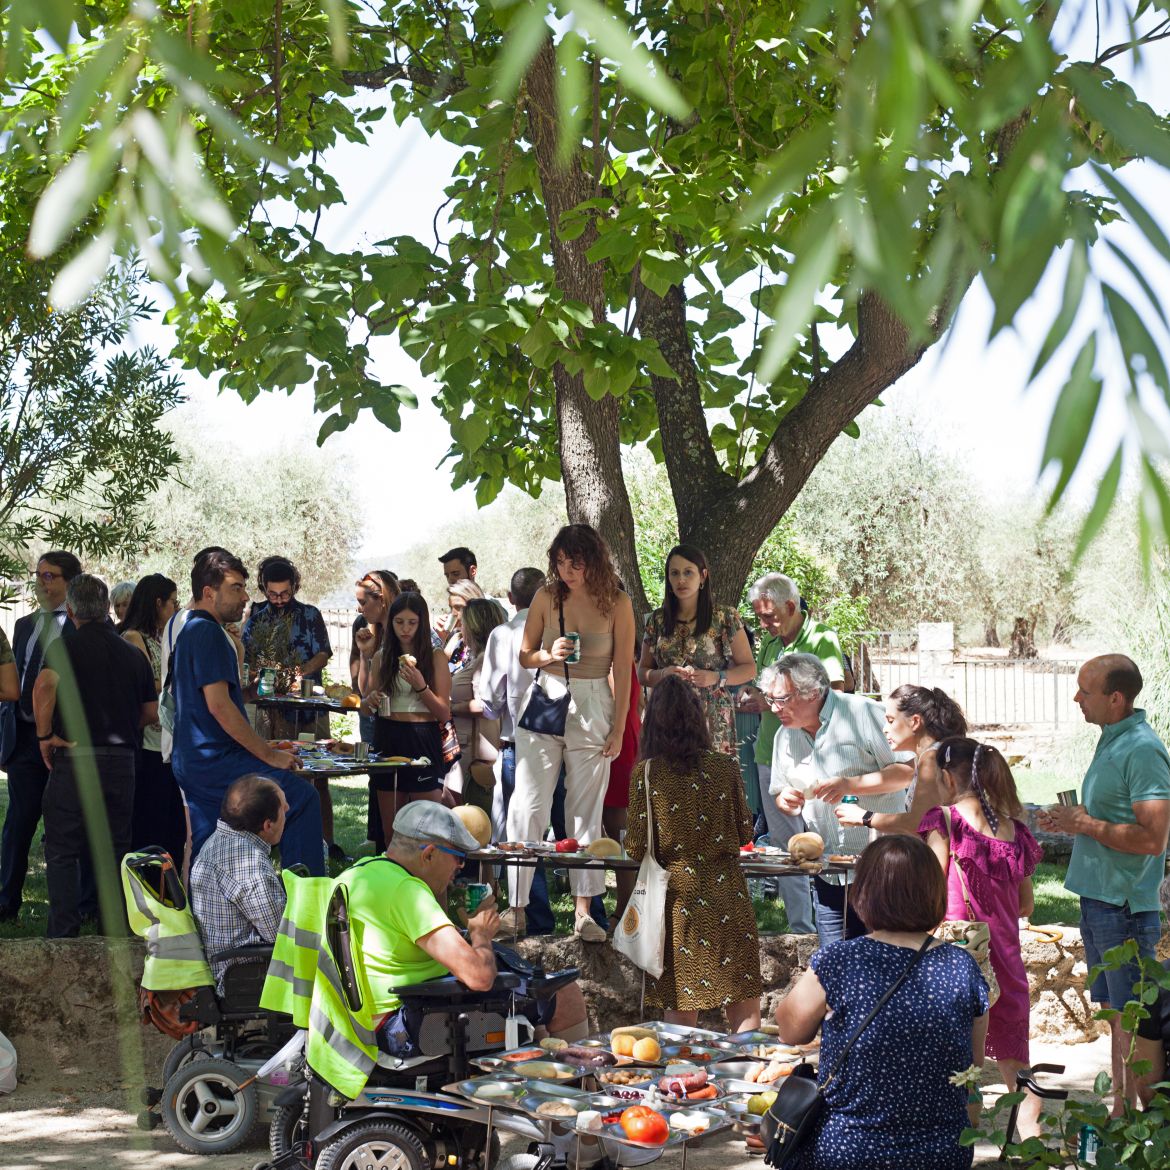 Personas usuarias de silla de ruedas y personas de pie comen y conversan bajo la sombra de unos arboles.